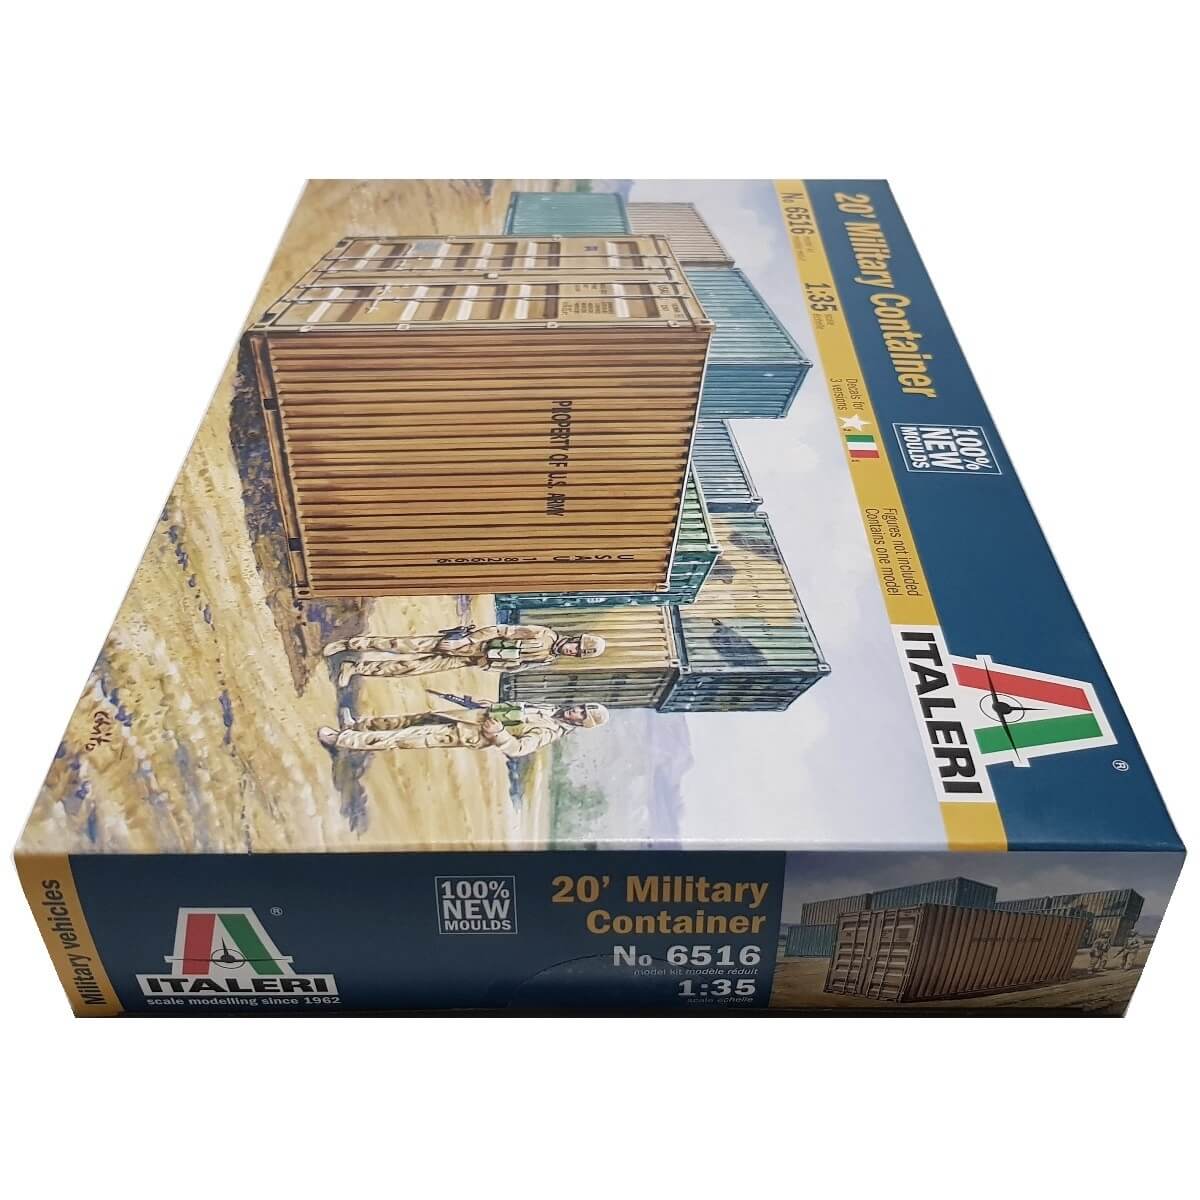 1:35 20' Military Container - ITALERI